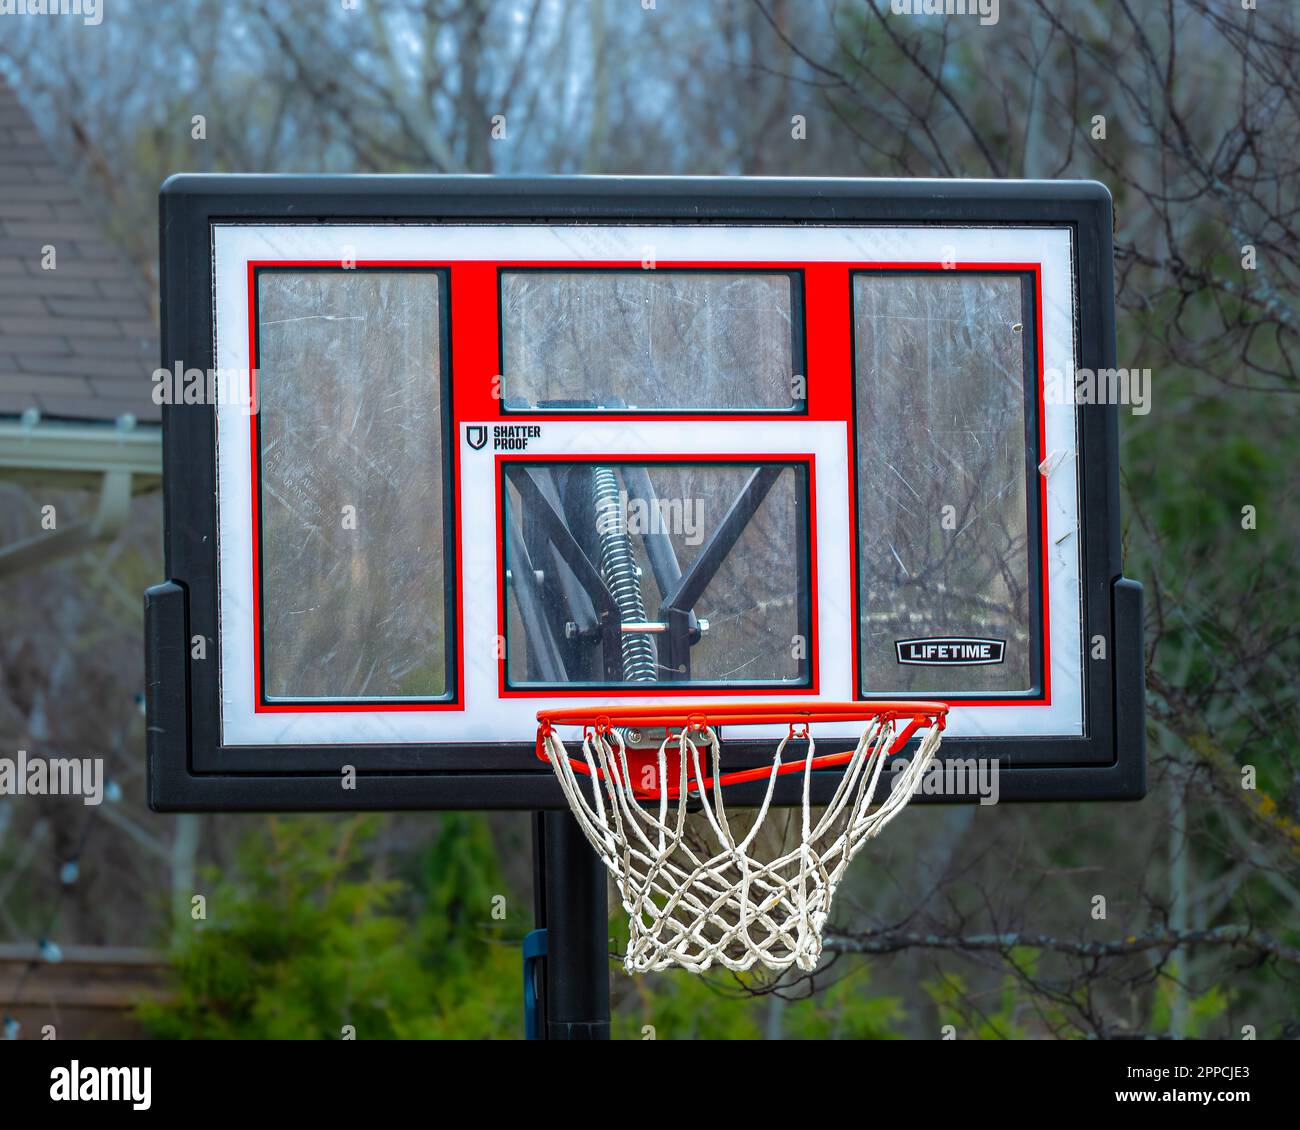 Pallacanestro. In molti quartieri delle città canadesi, un gioco di pallacanestro cortile è una vista comune. Il basket è un'immagine comune. Foto Stock